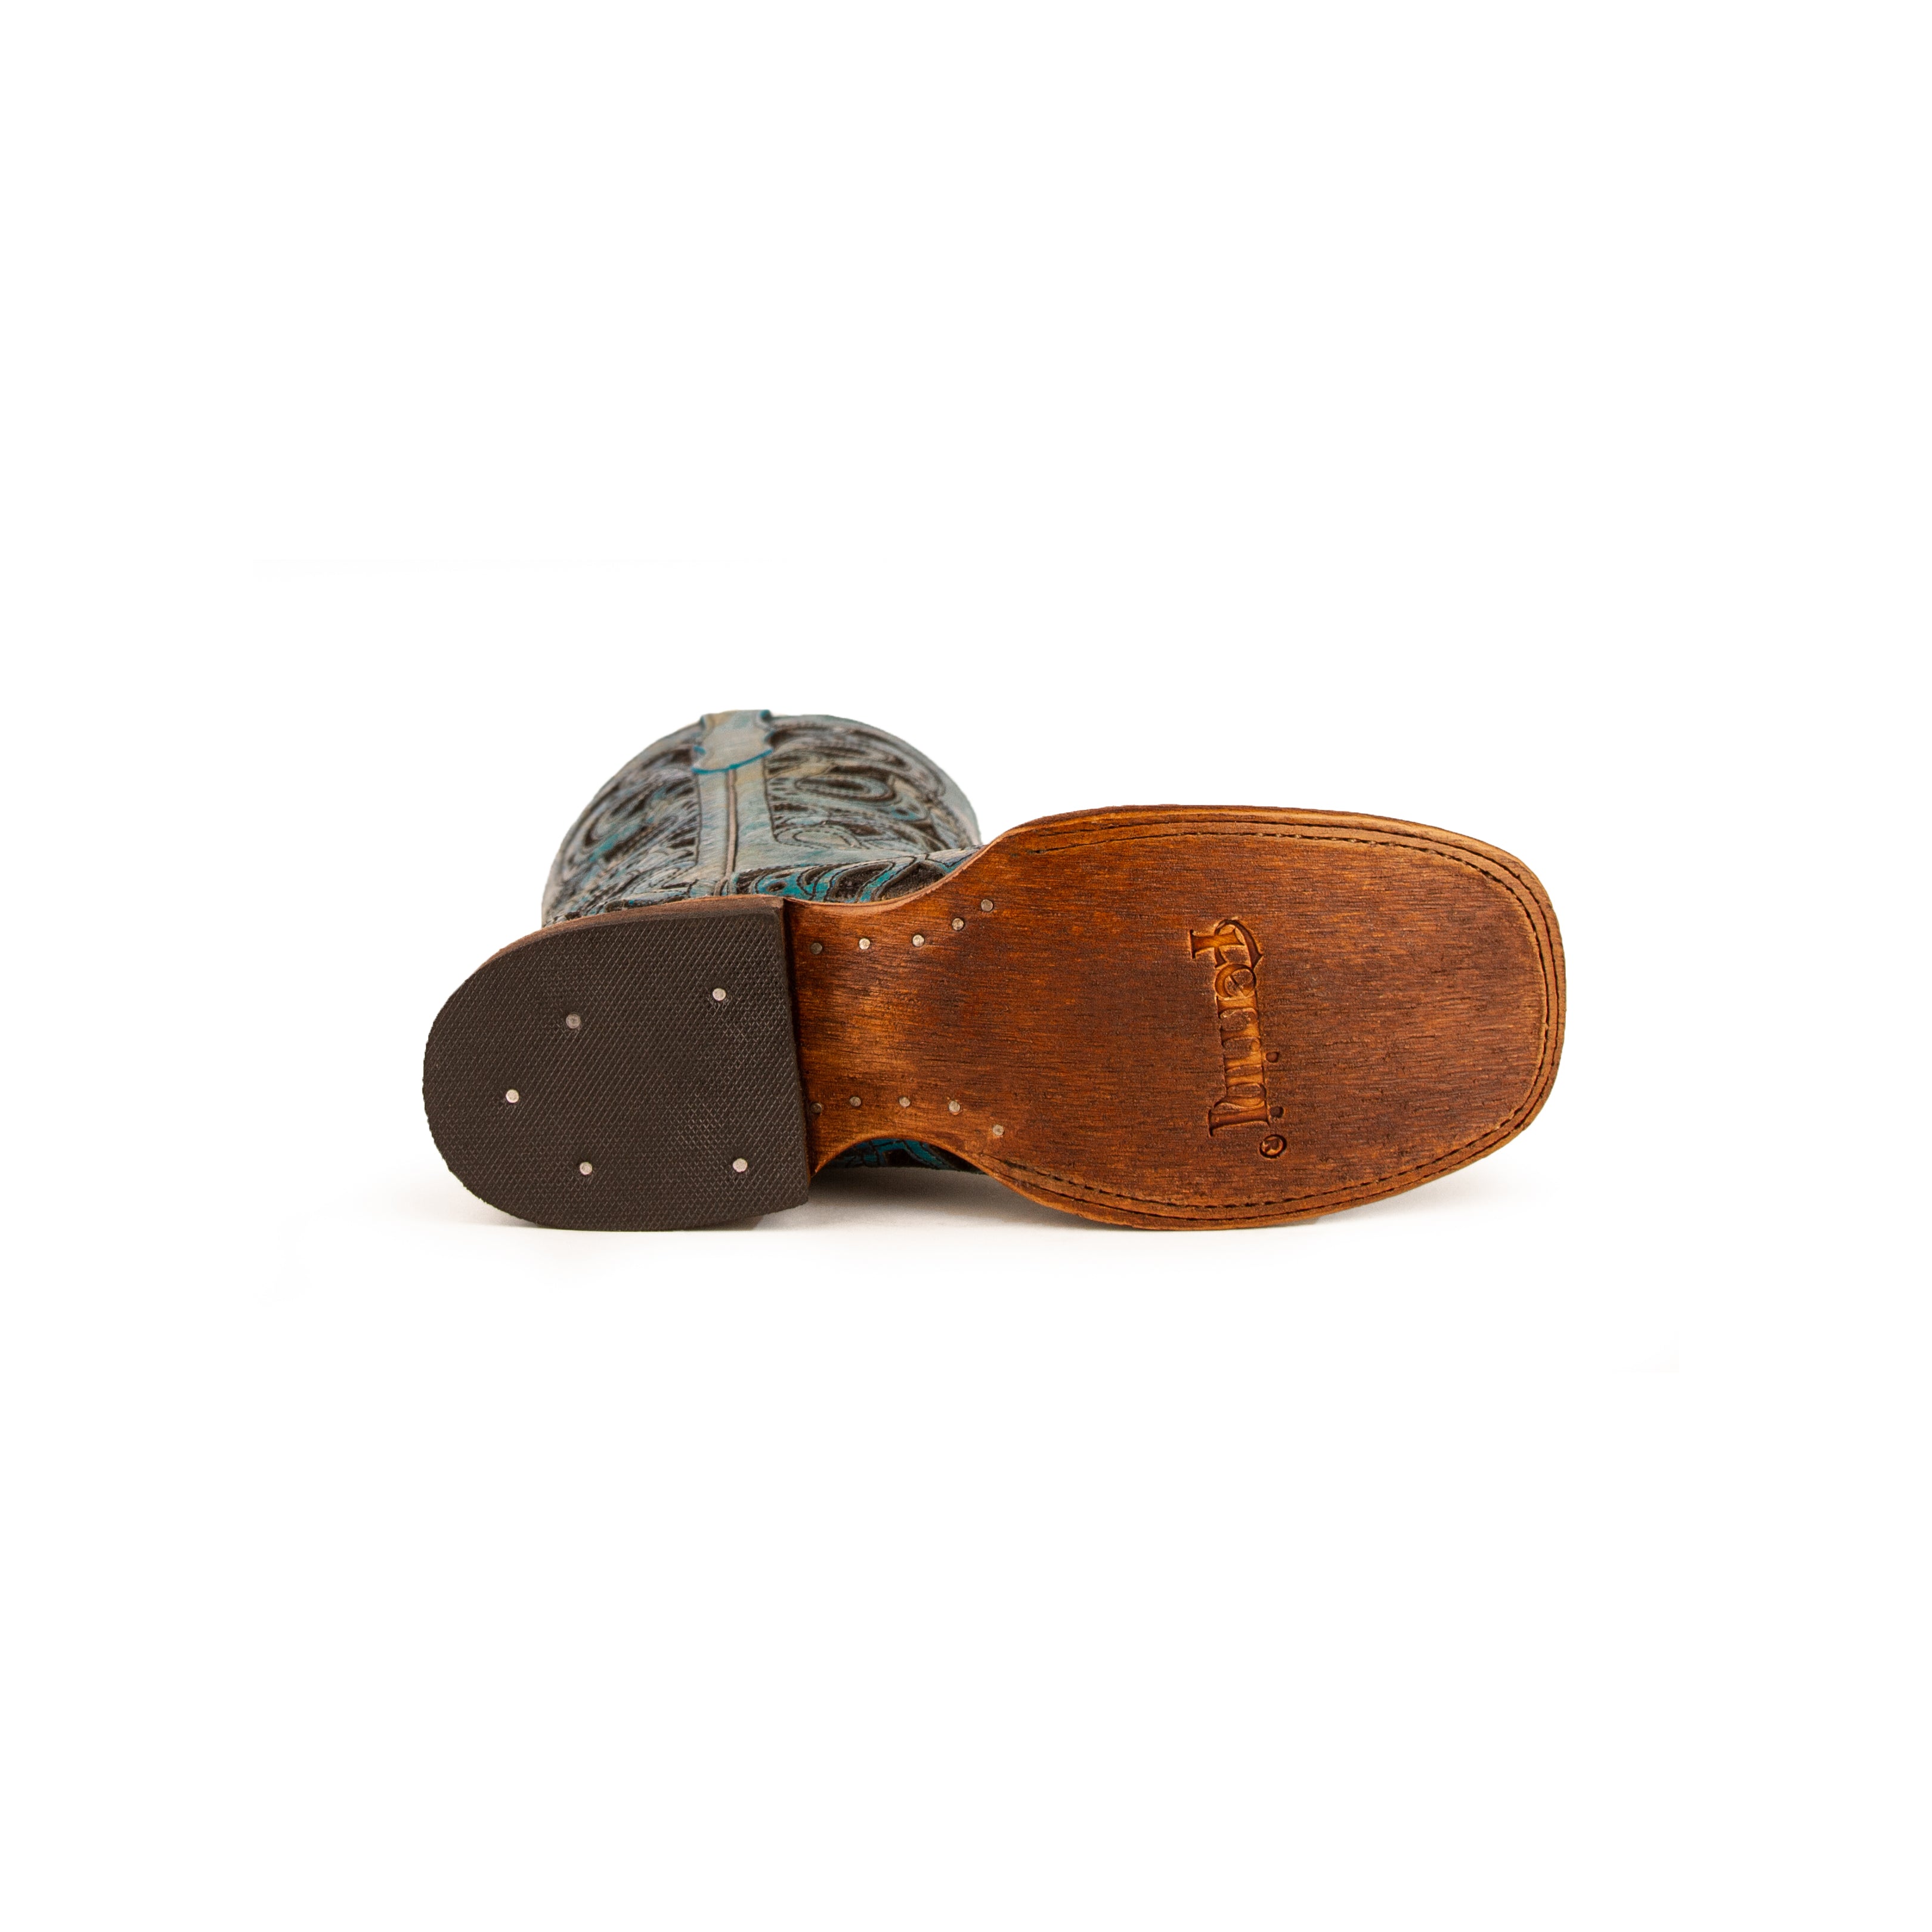 Horseshoe: Distressed Leather Turquoise Cowboy Boot - Ferrini USA